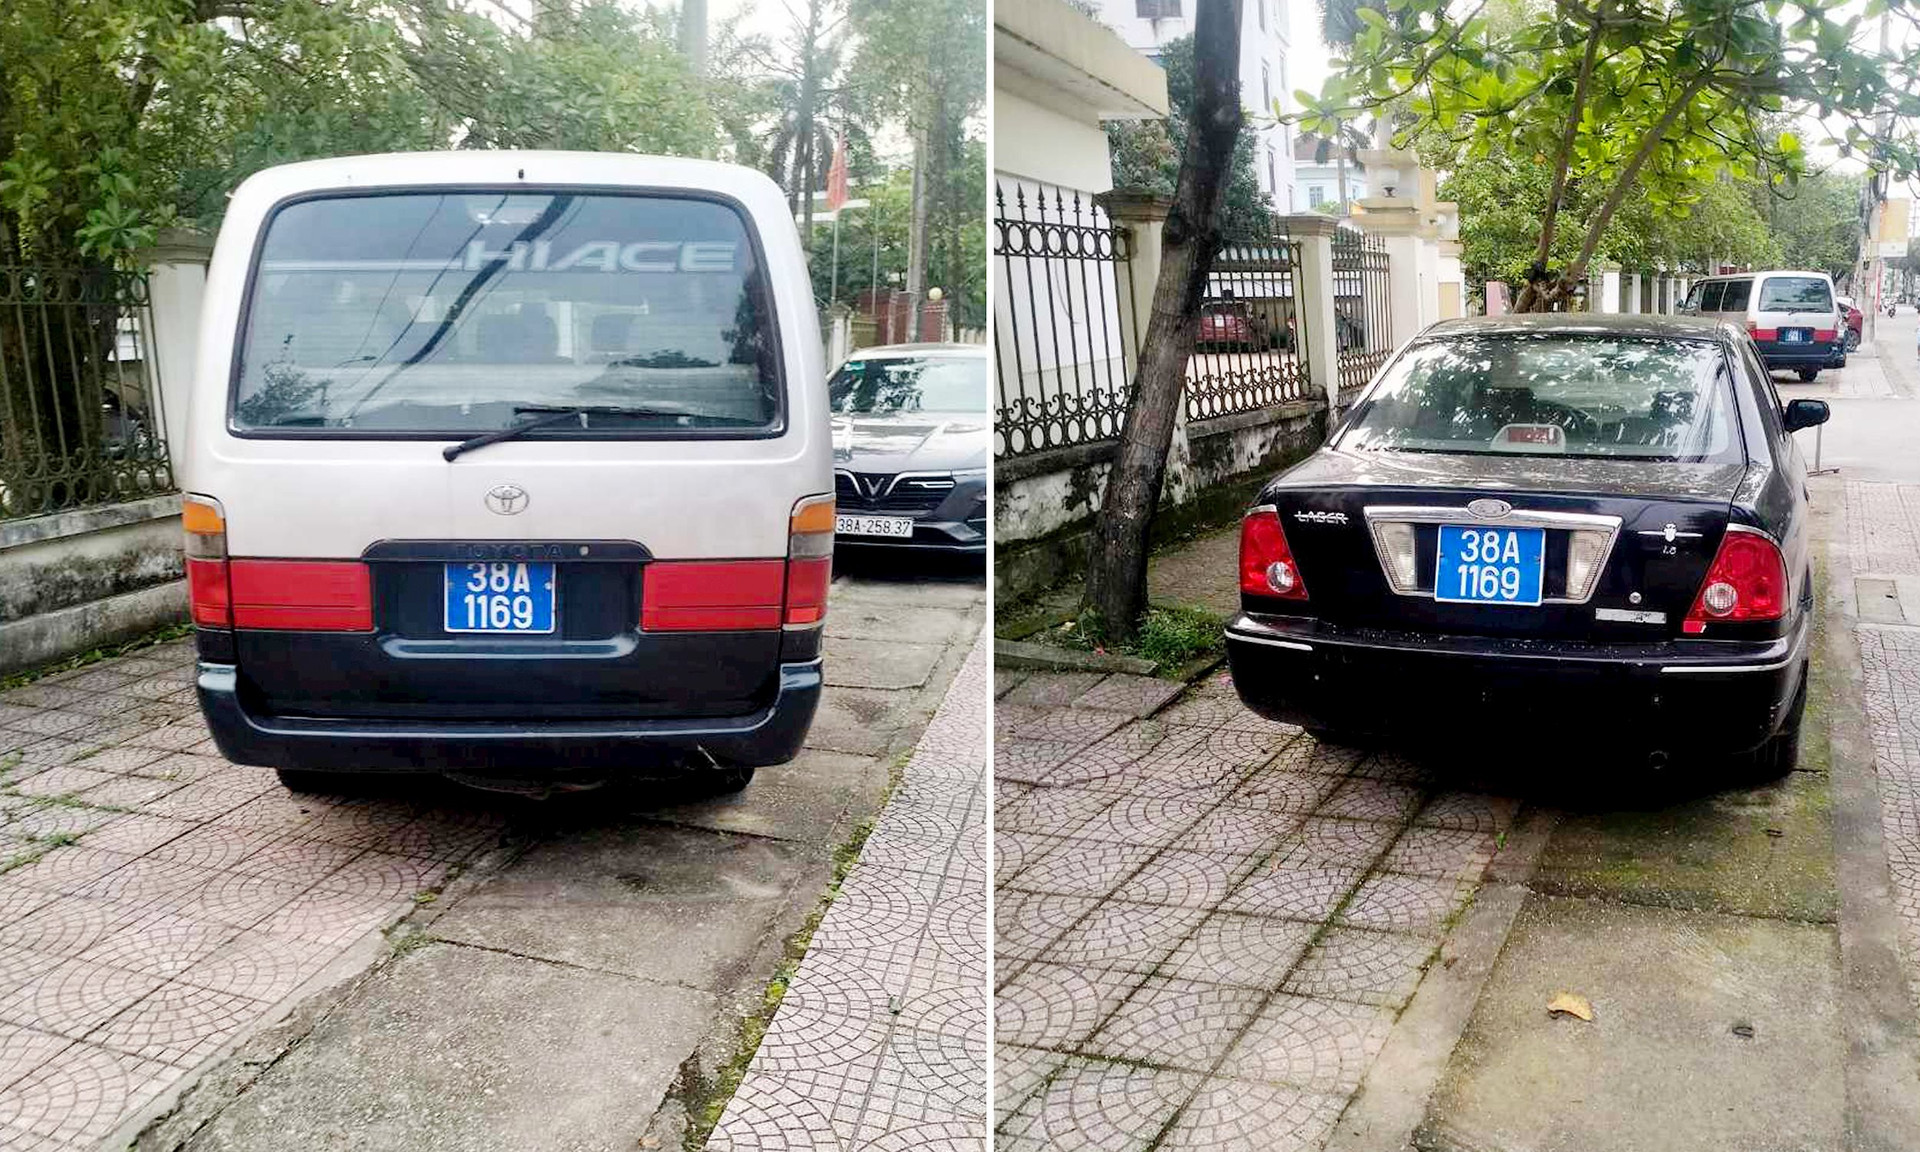 Hai xe ô tô cùng gắn chung một biển xanh 38A-1169 đậu trên đường ở TP Hà Tĩnh. Ảnh: Người dân cung cấp